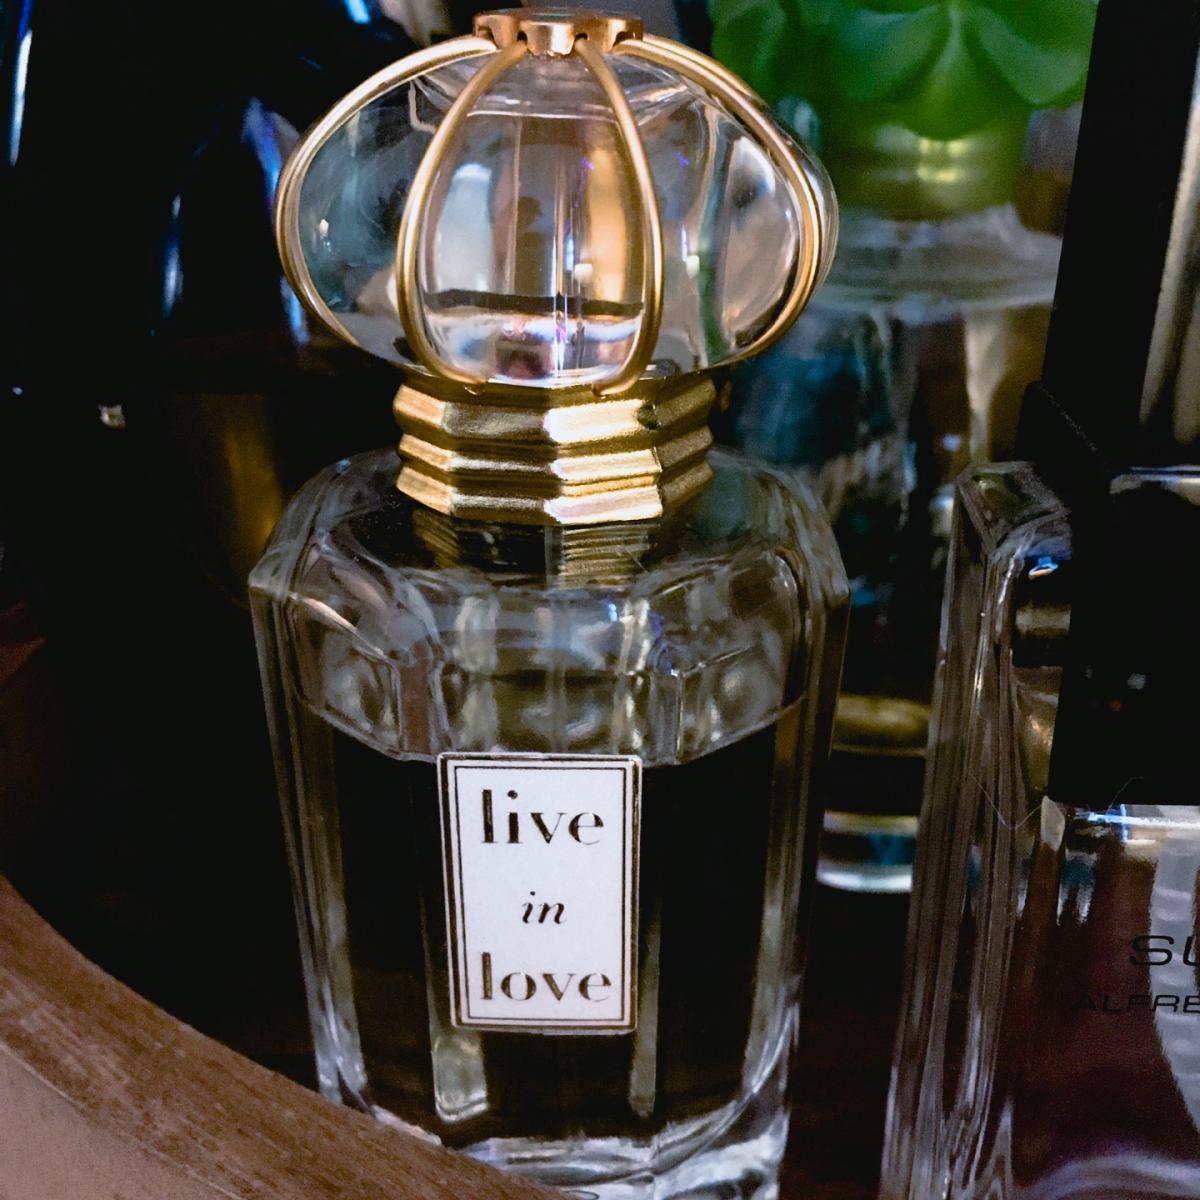 Live in Love Oscar de la Renta perfume - a fragrance for women 2011